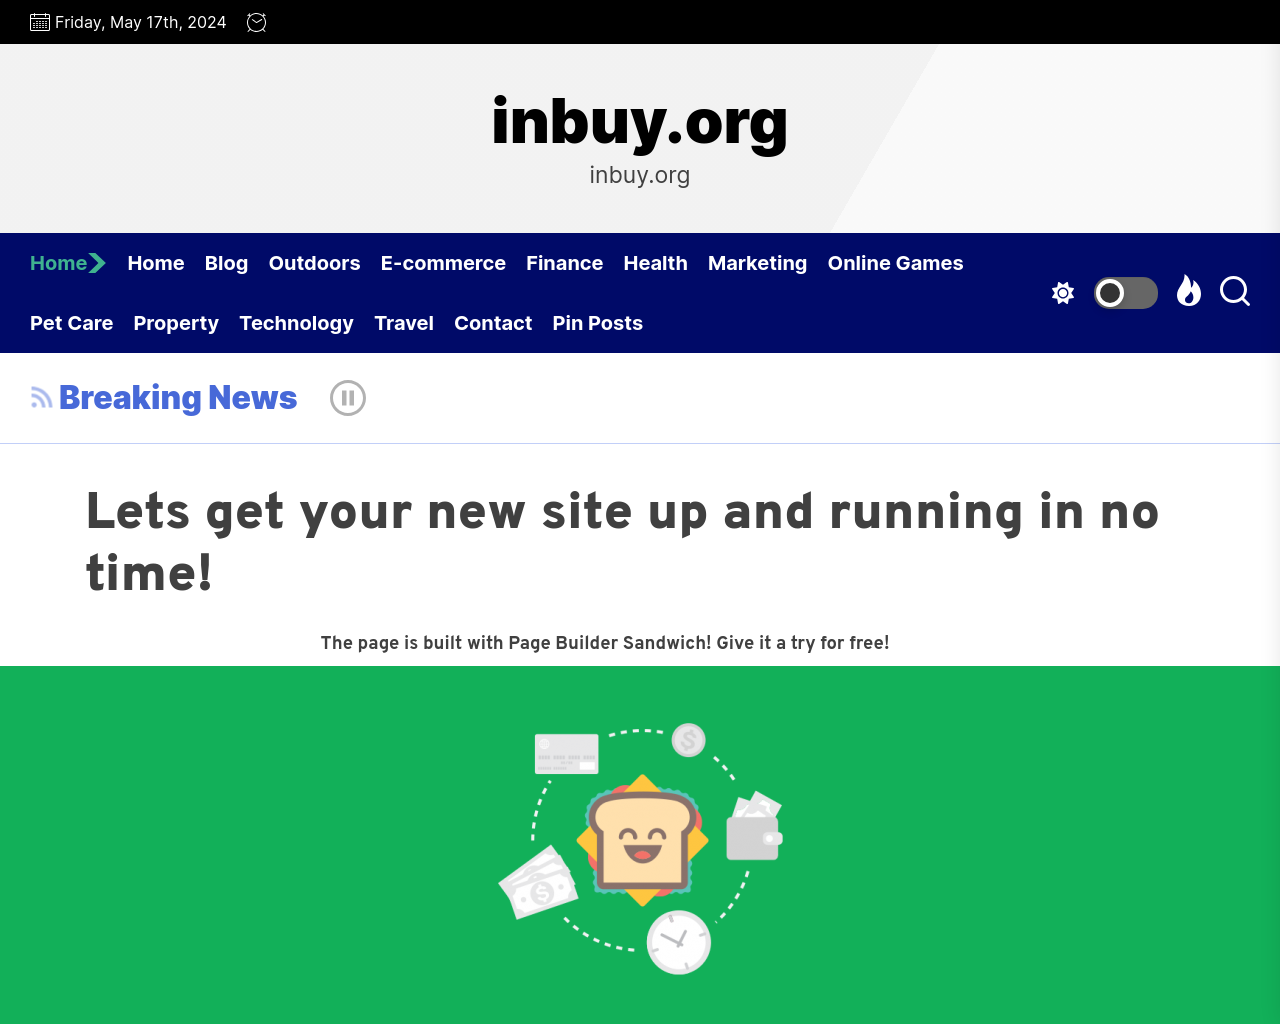 inbuy.org